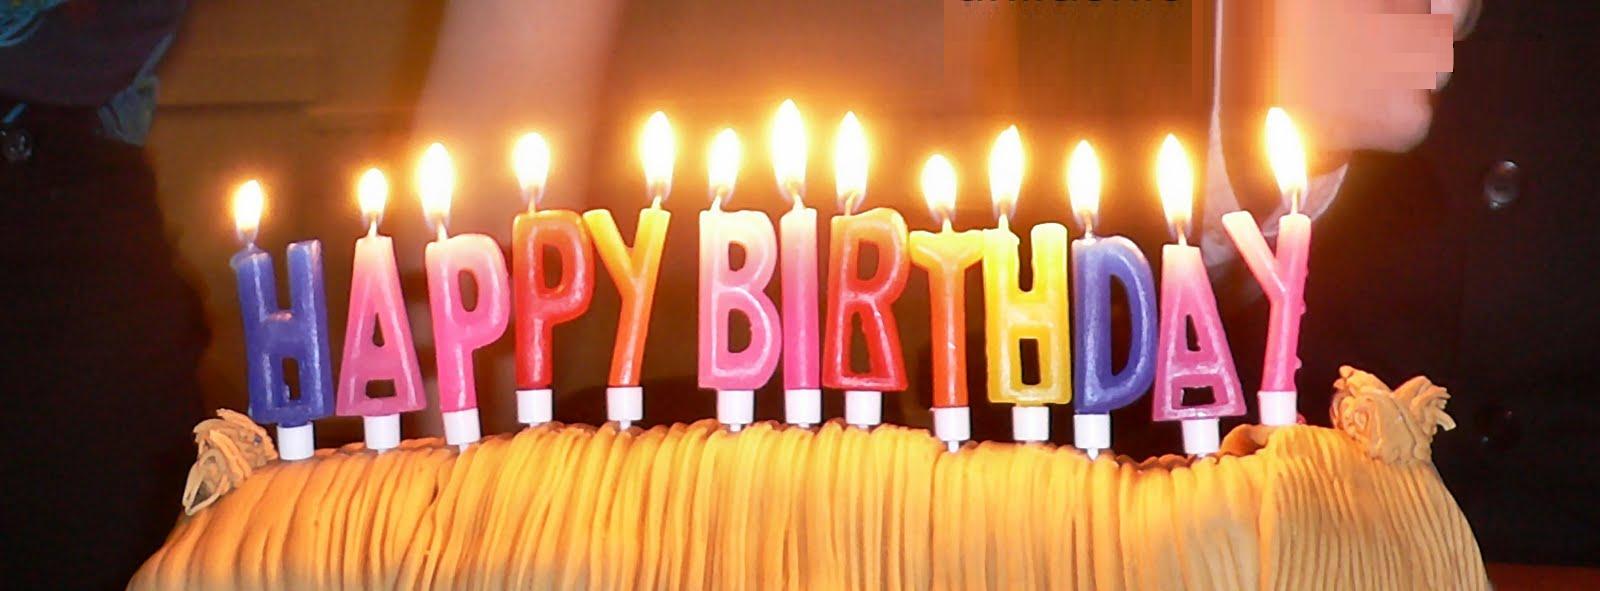 happy birthday themes happy birthday themes happy birthday images 1600x591